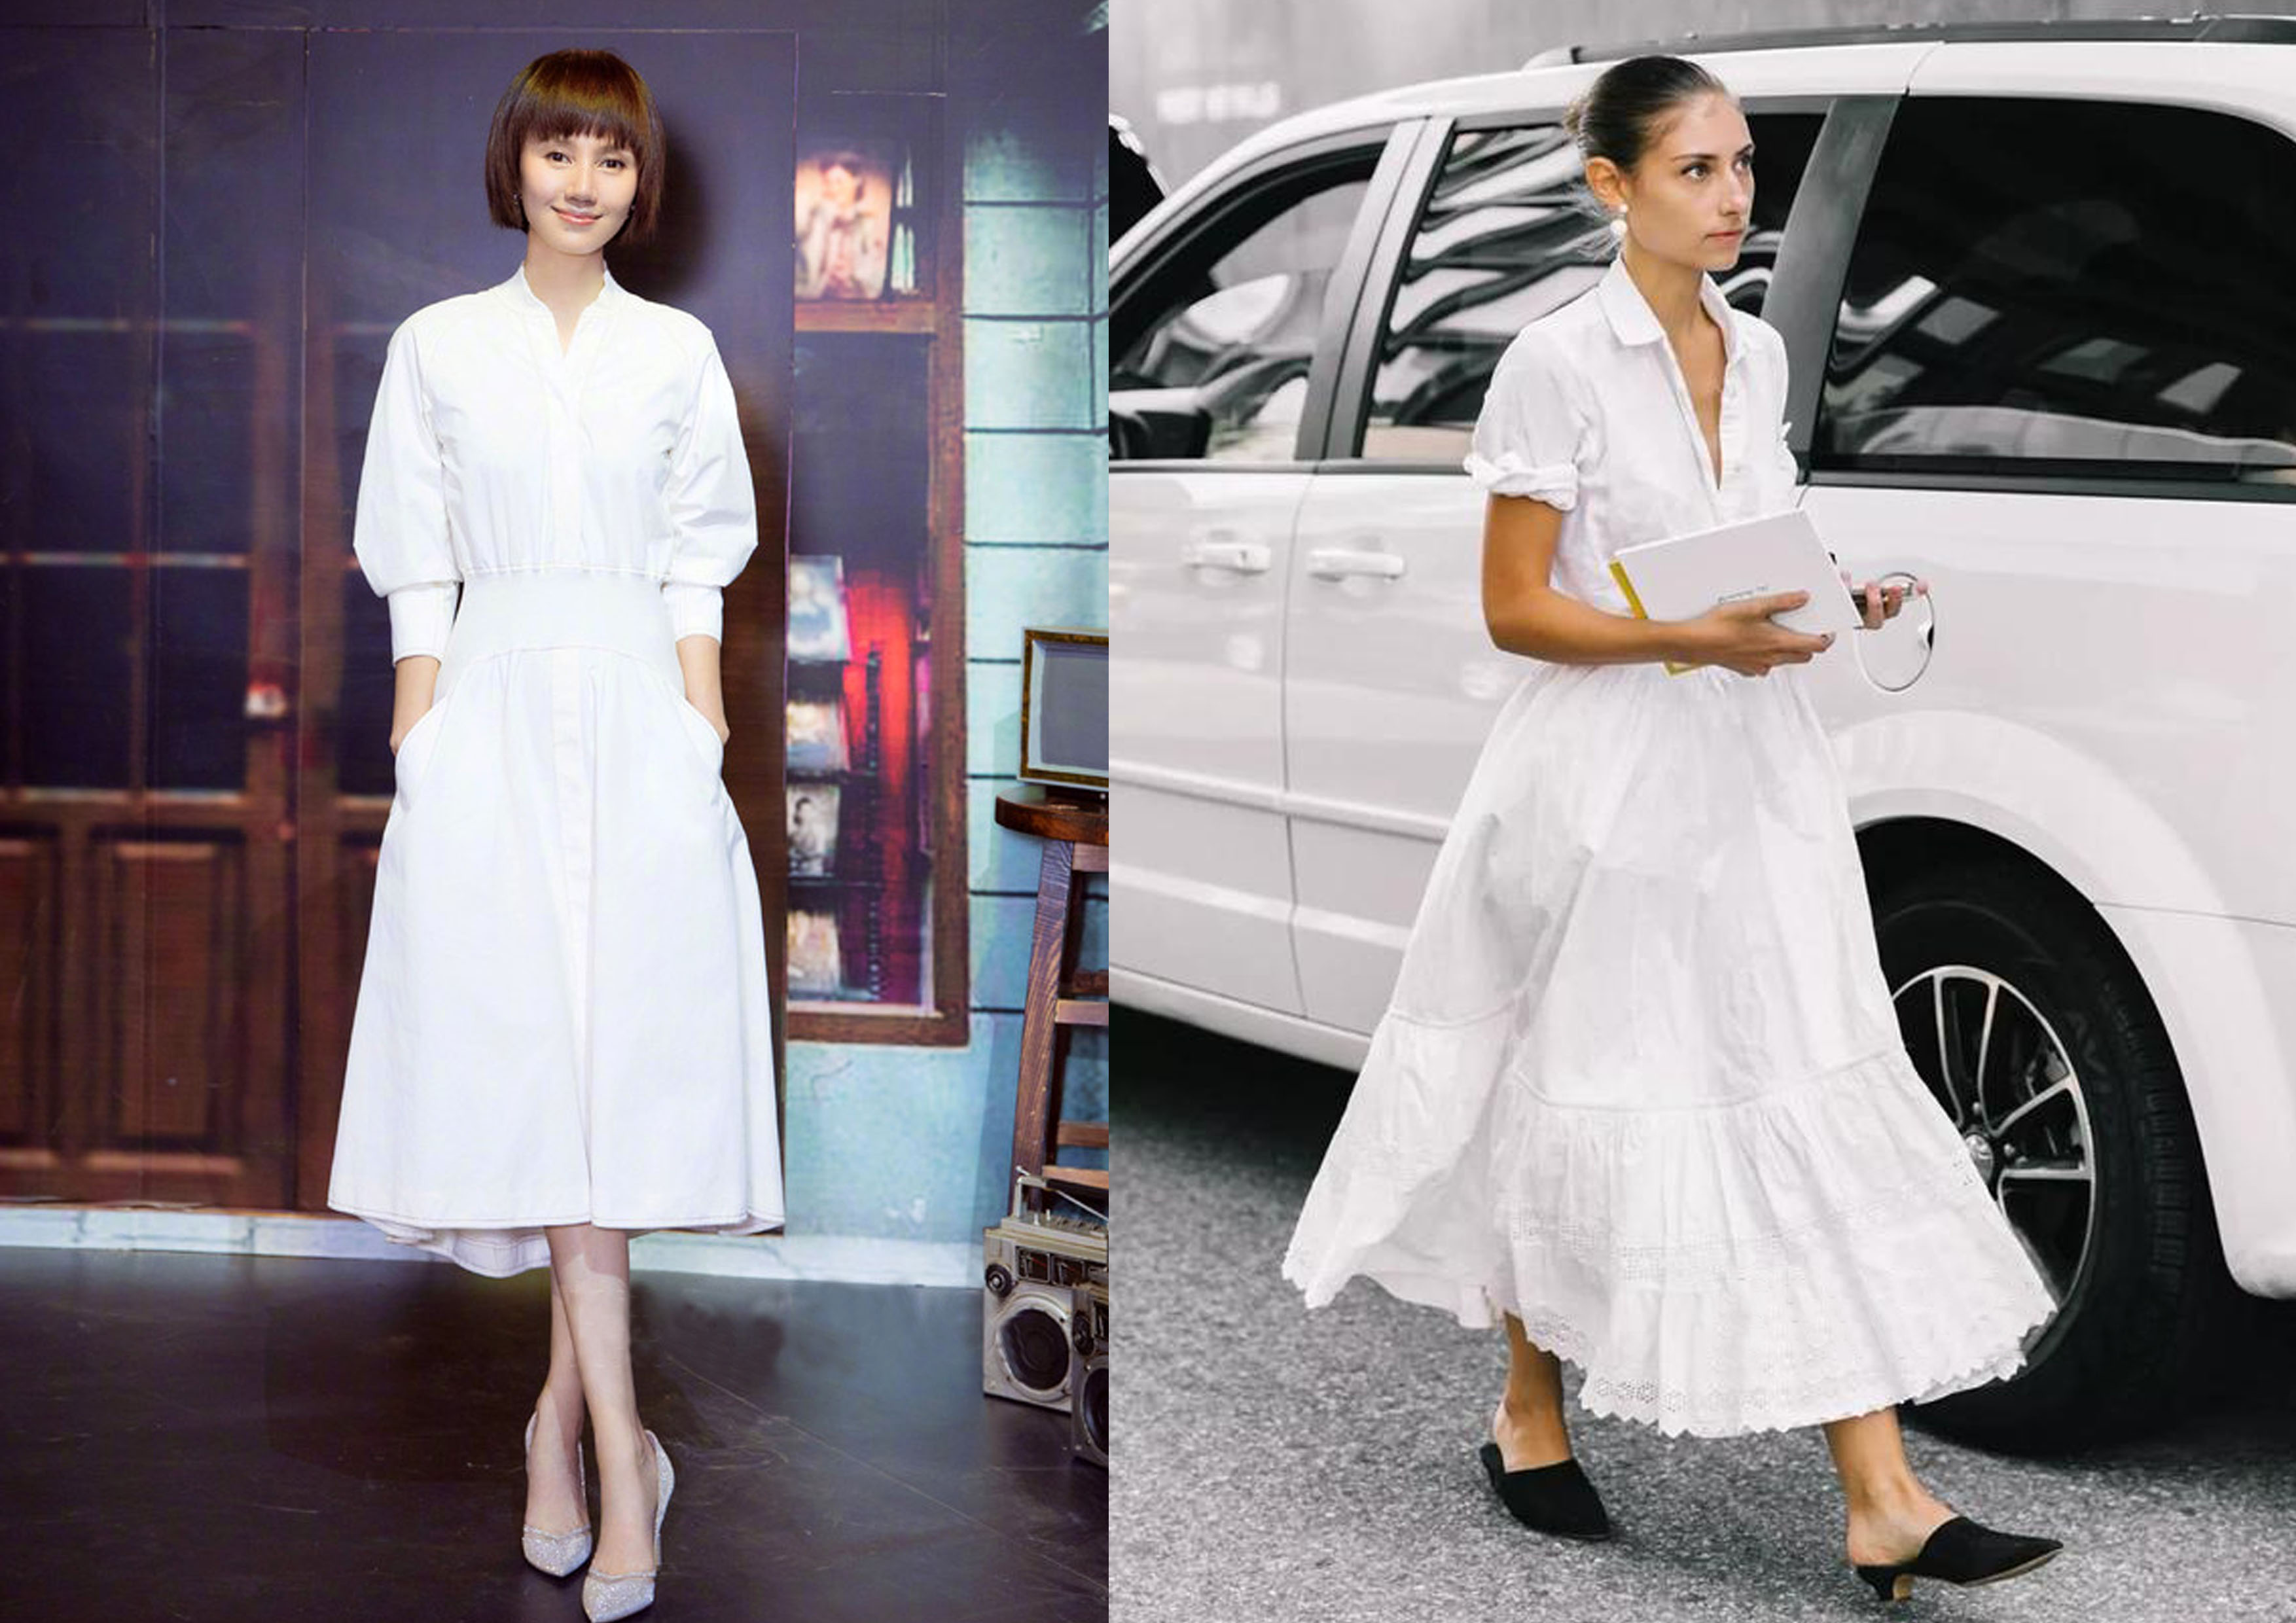 简单的纯色搭配,气质和优雅的造型,纯黑色收腰衬衫裙,推荐搭配白色的